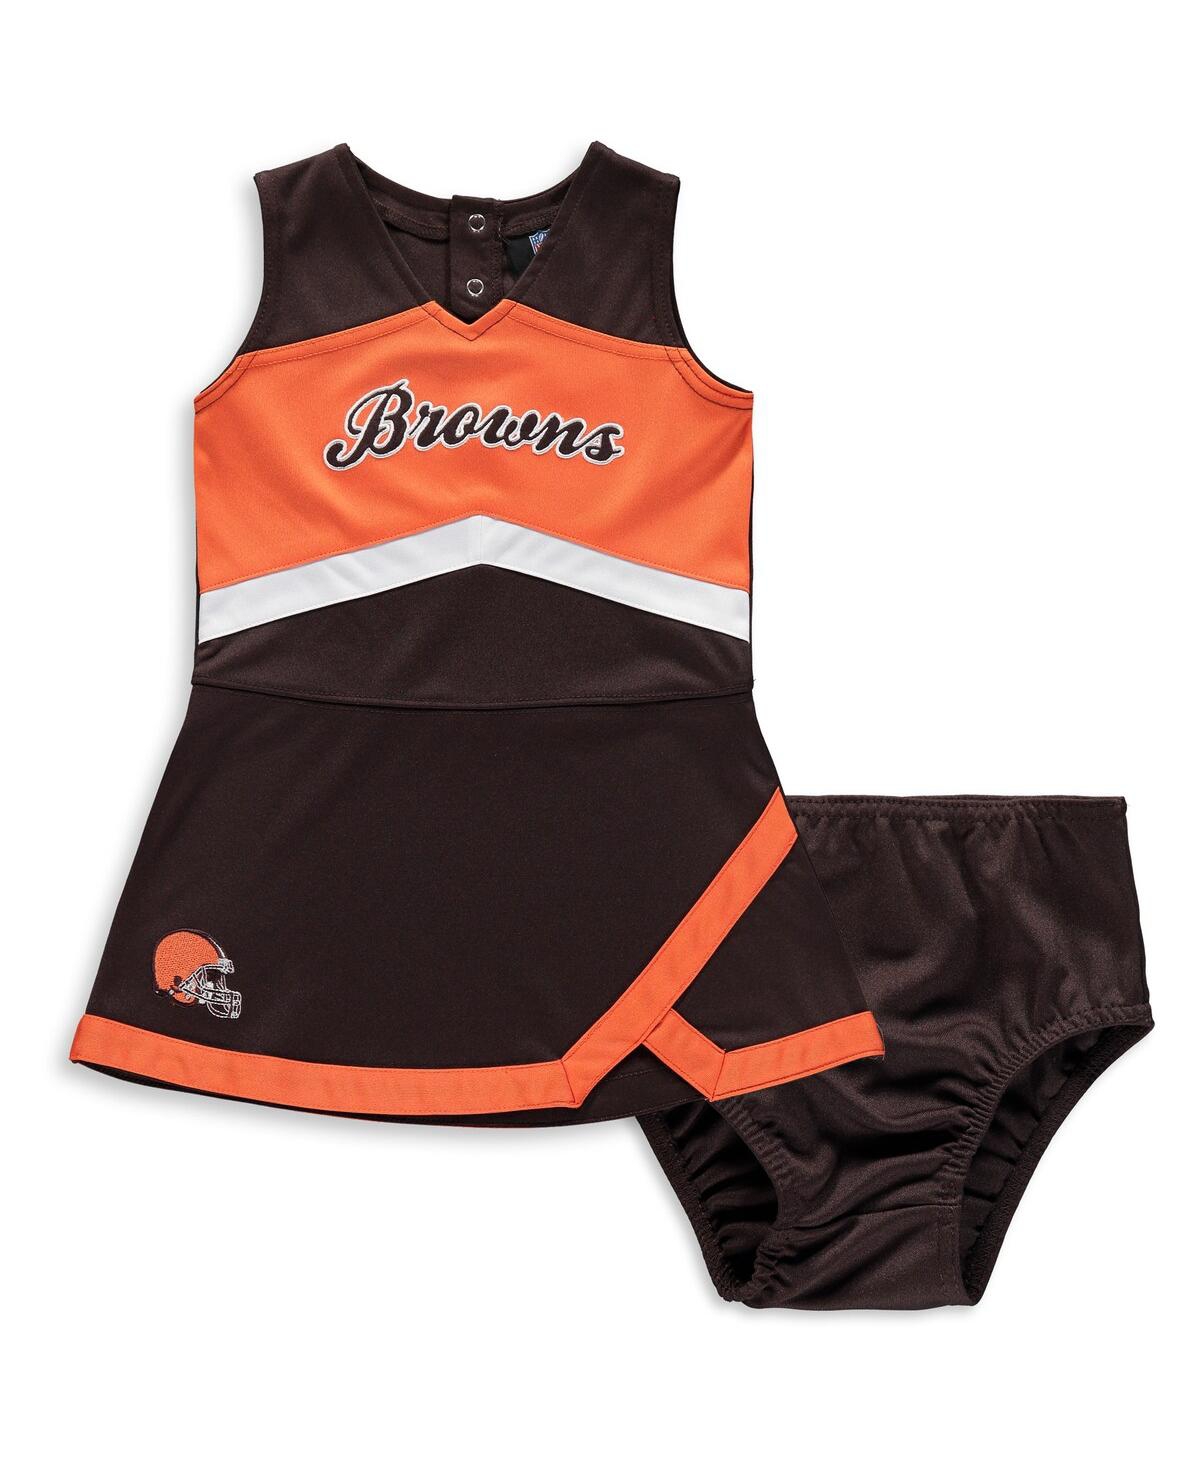 Outerstuff Babies' Little Girls Brown Cleveland Browns Cheer Captain Jumper Dress